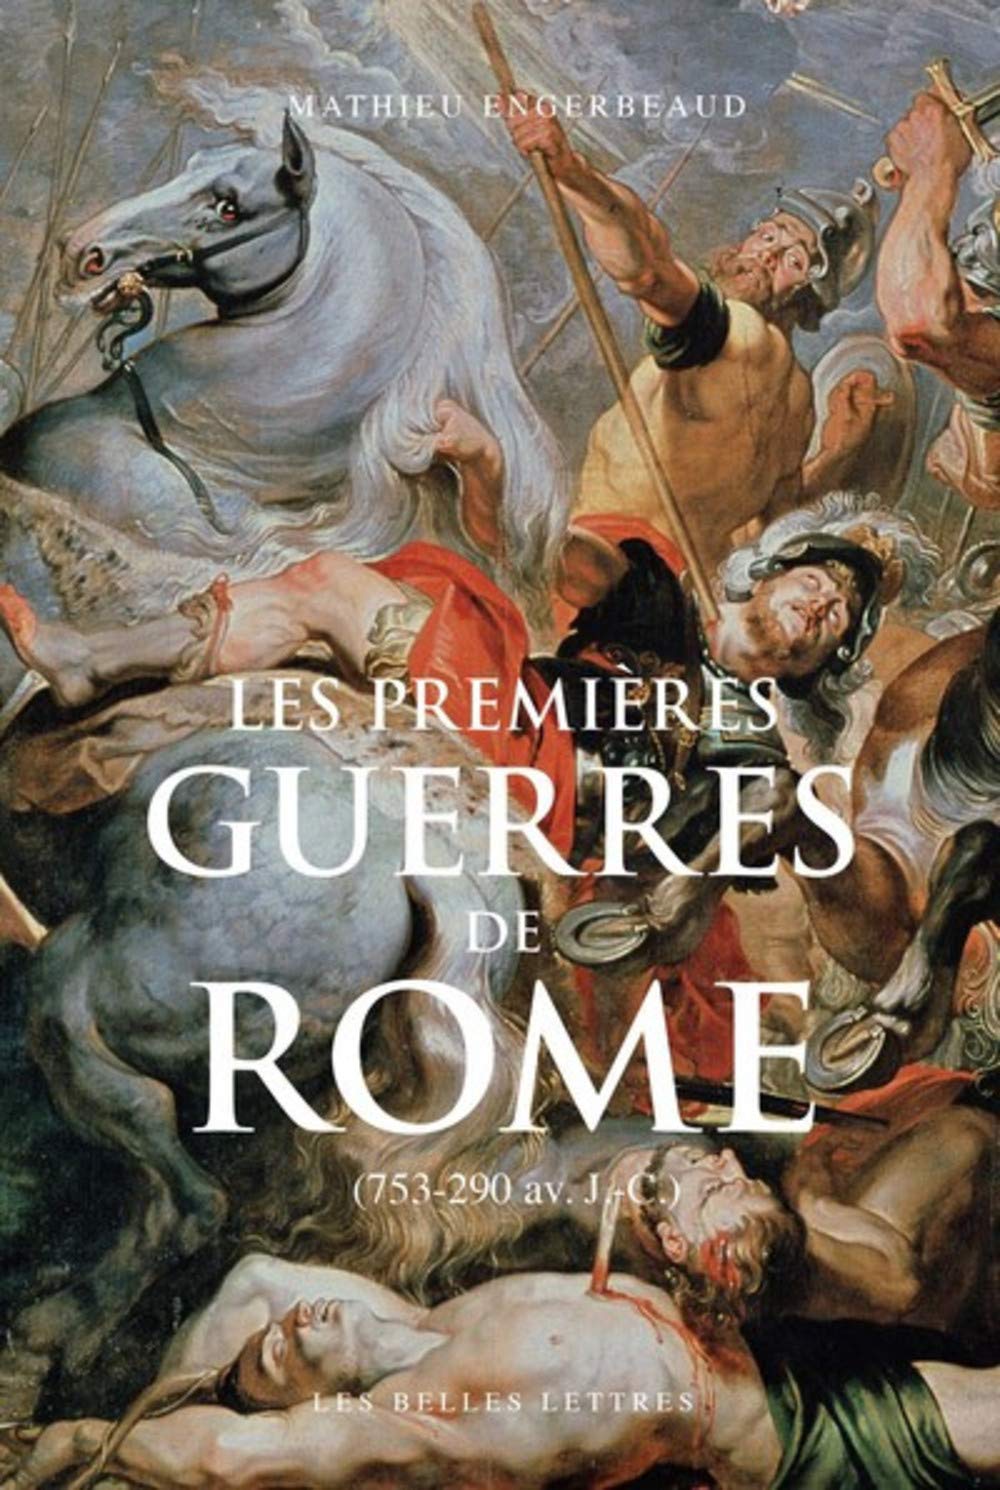 Les premières guerres de Rome (753-290 av. J.-C.), 2020, 495 p.